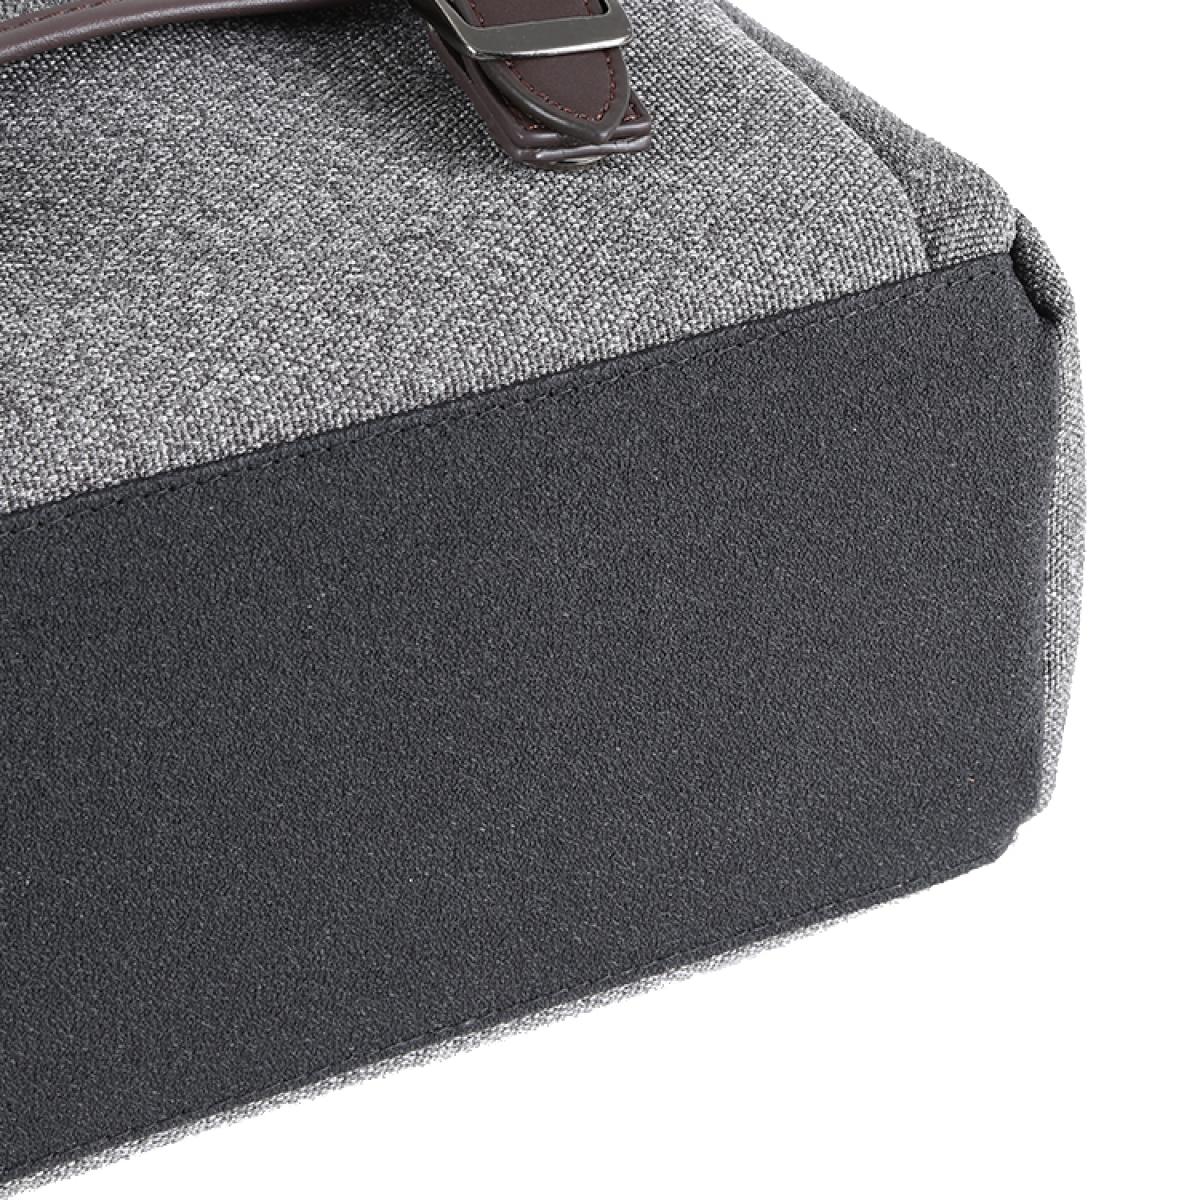 DSLR Camera Messenger Shoulder Bag Gray 9.8*5.1*8.7 inches